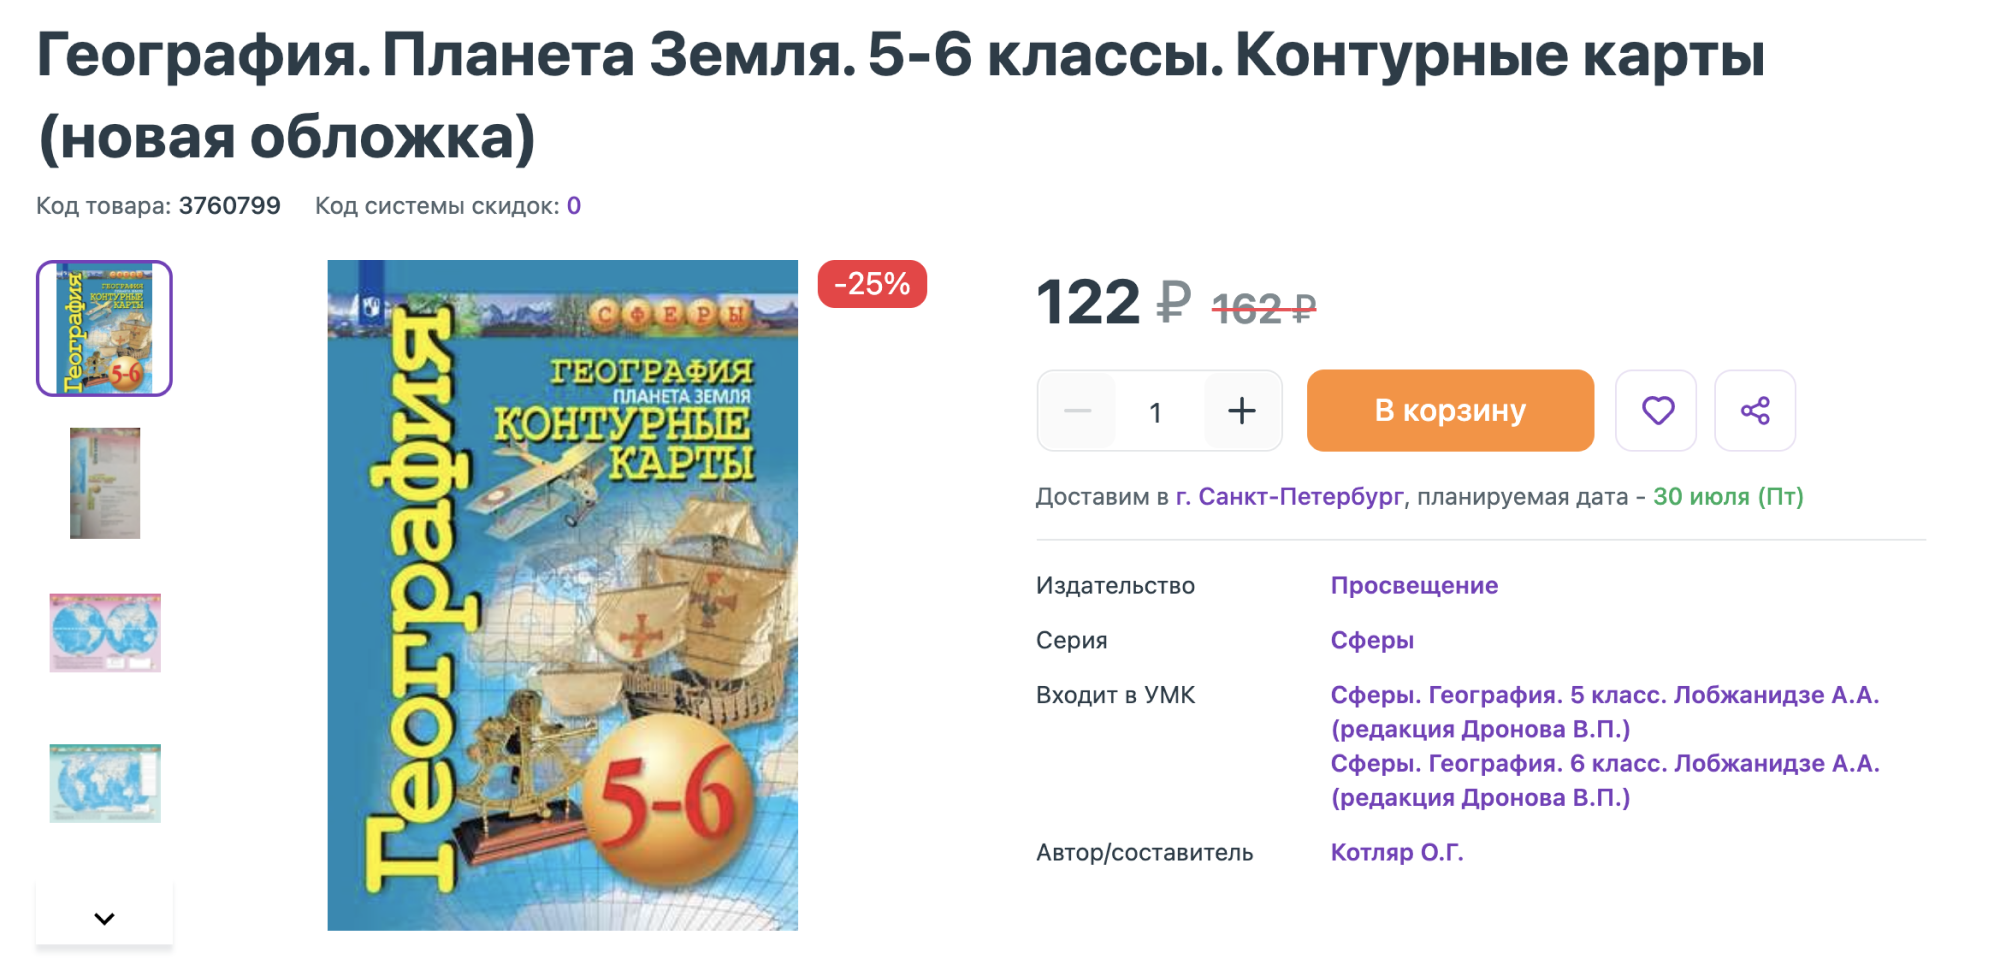 Контурные карты я могу купить за 107 ₽. Источник: my-shop.ru